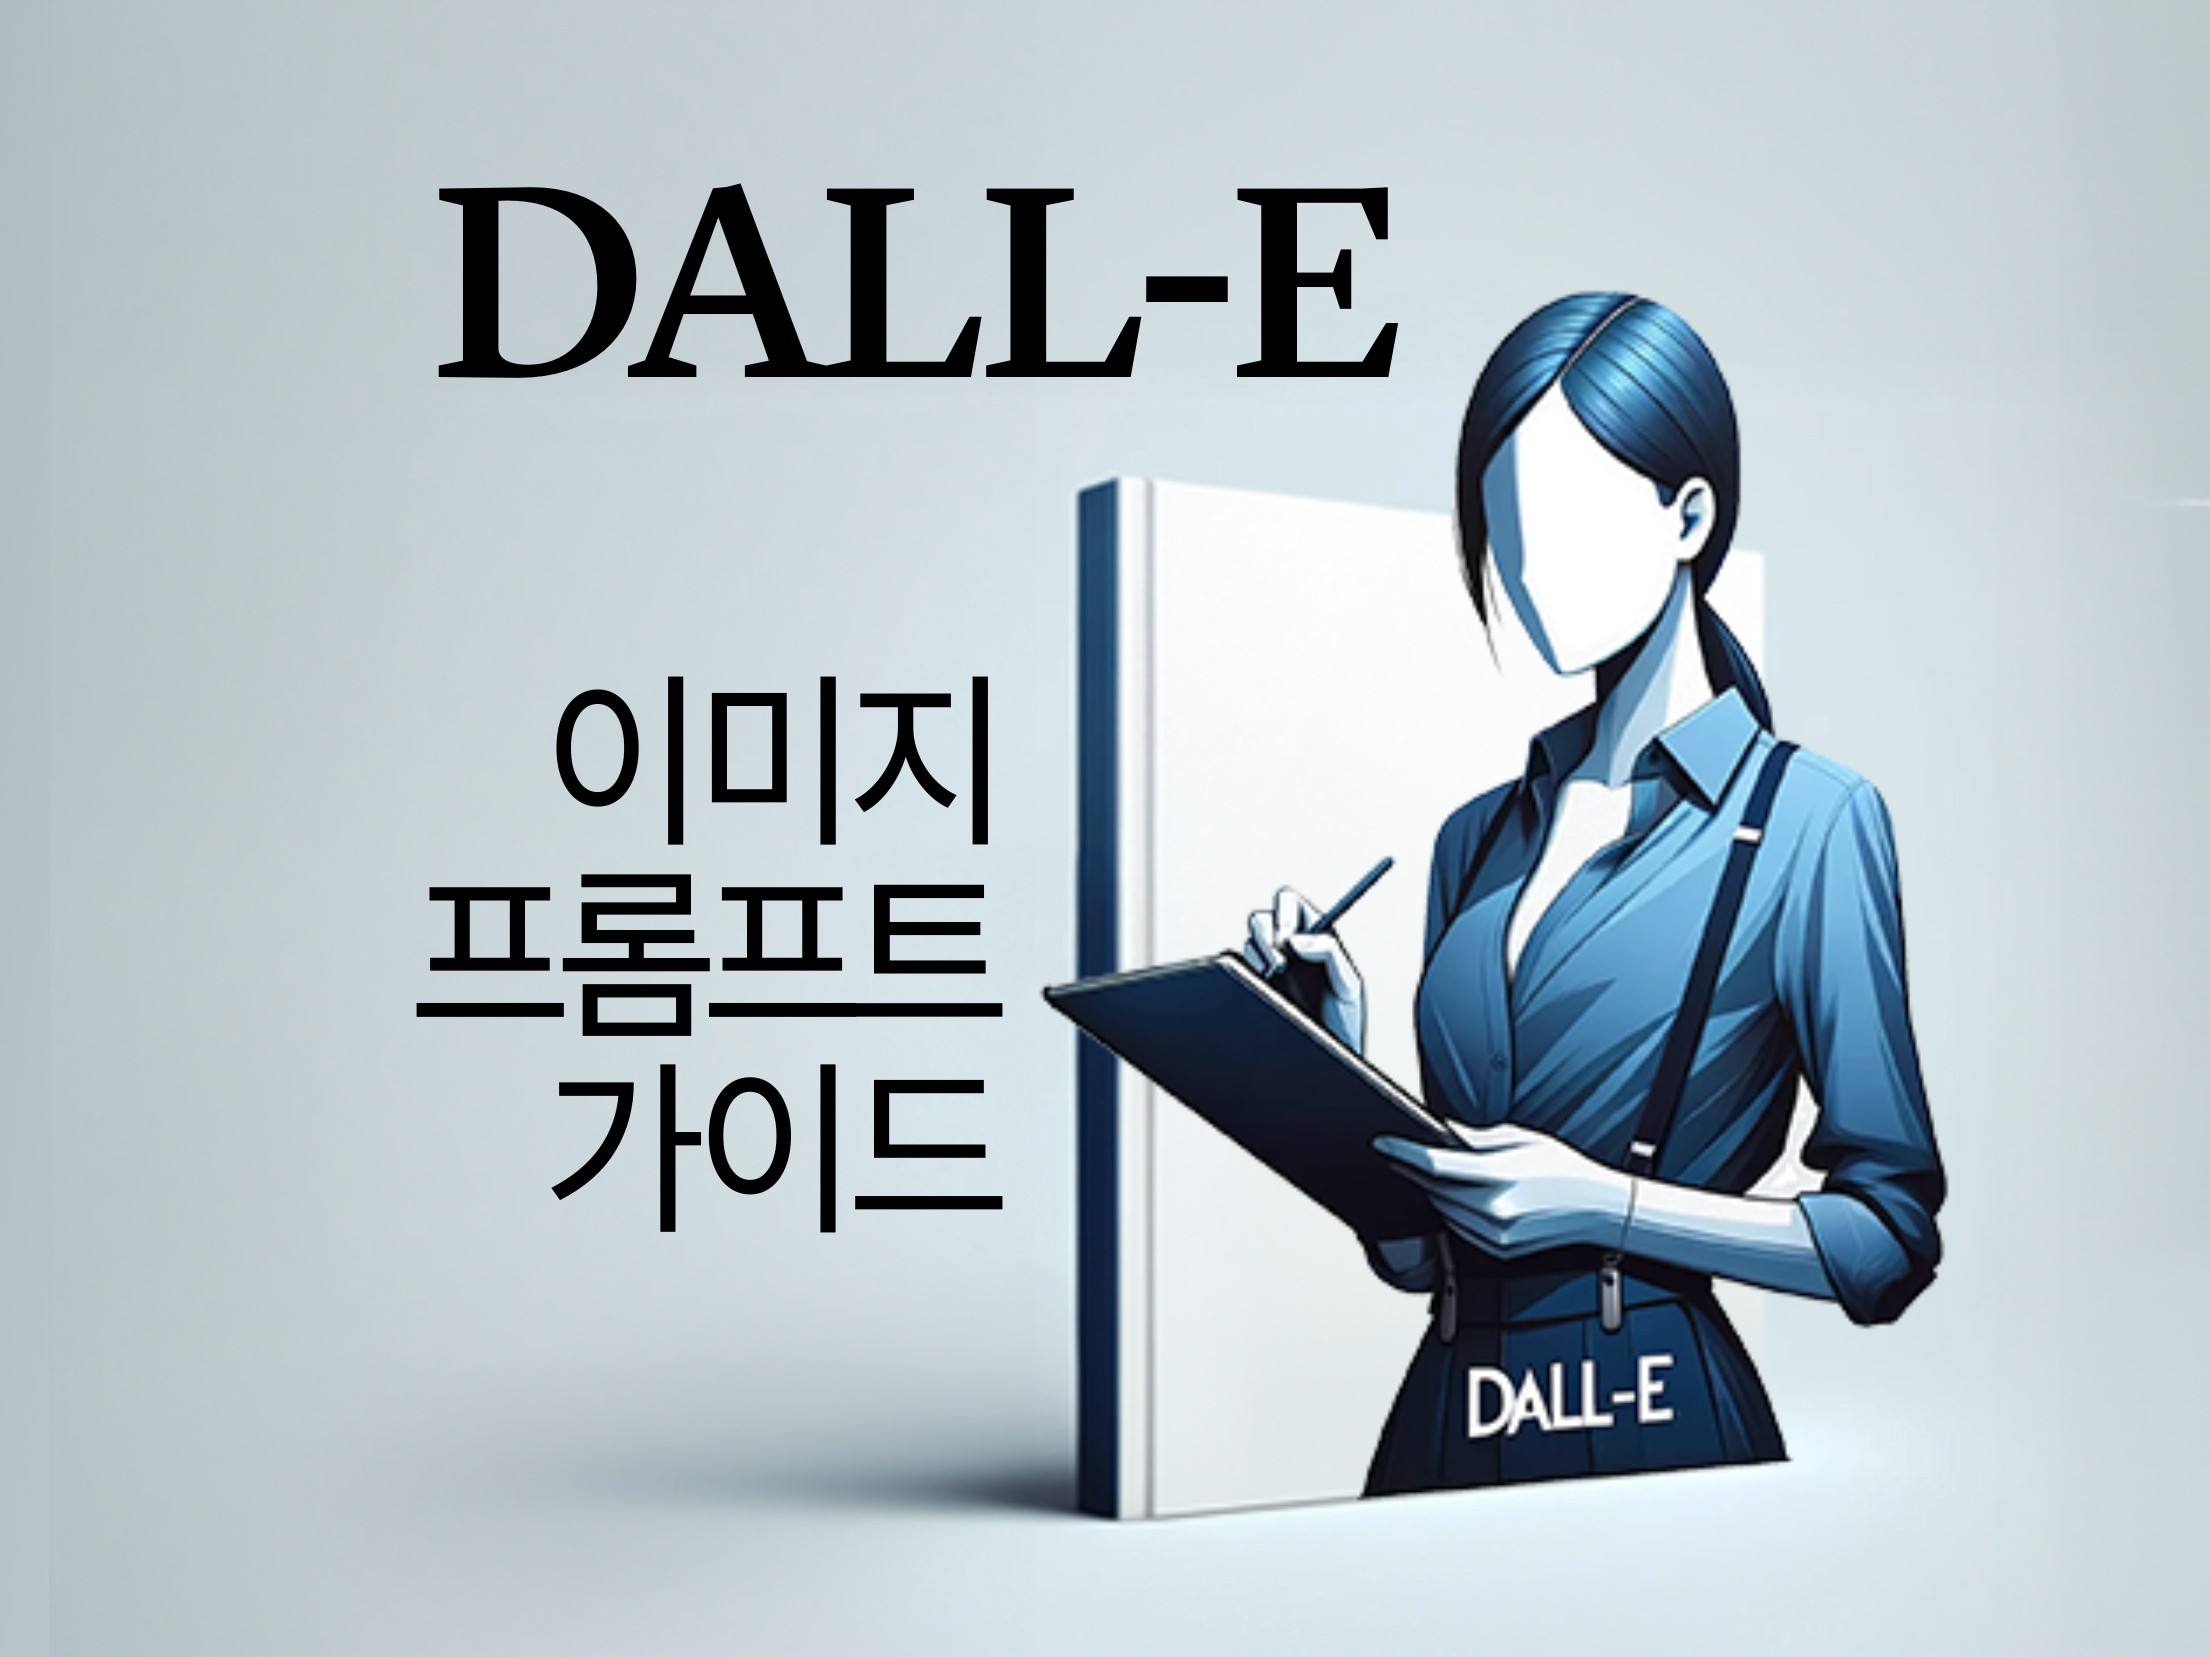 DALL-E 이미지 프롬프트 가이드